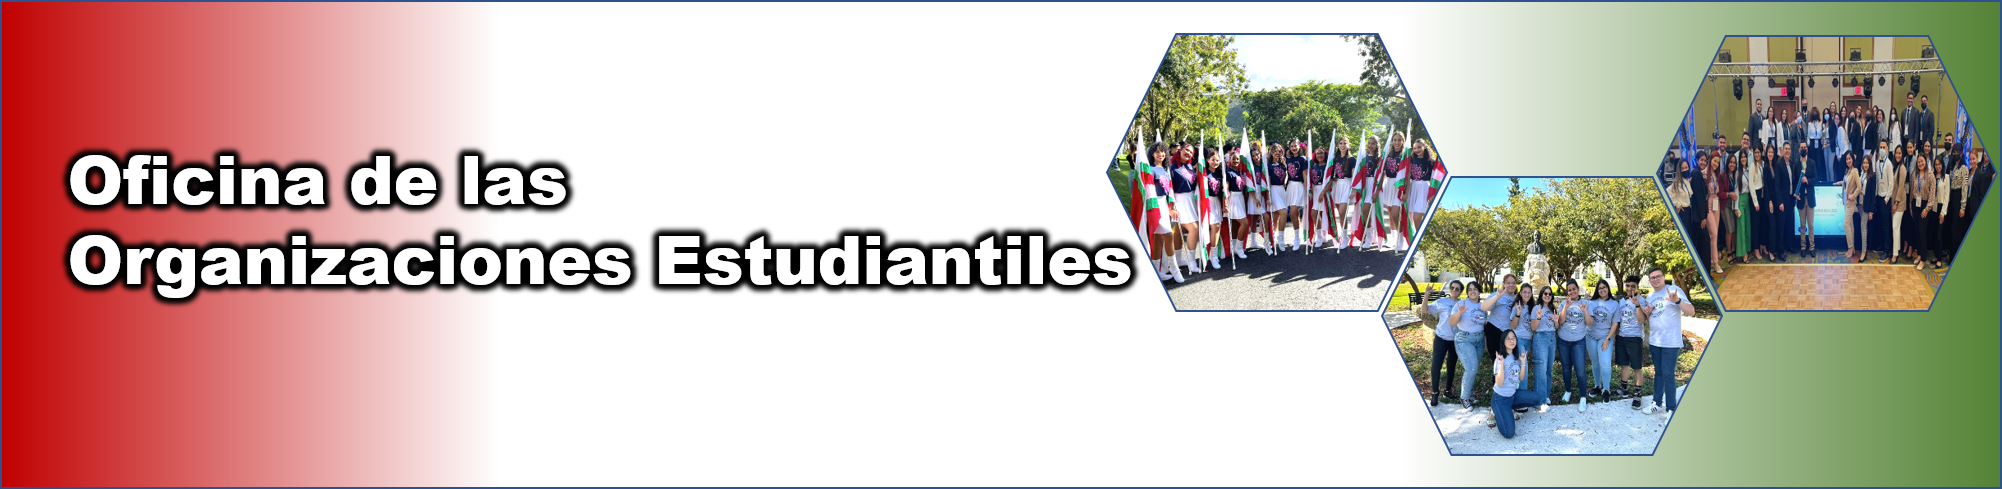 Banner Oficina de las Organizaciones Estudiantiles